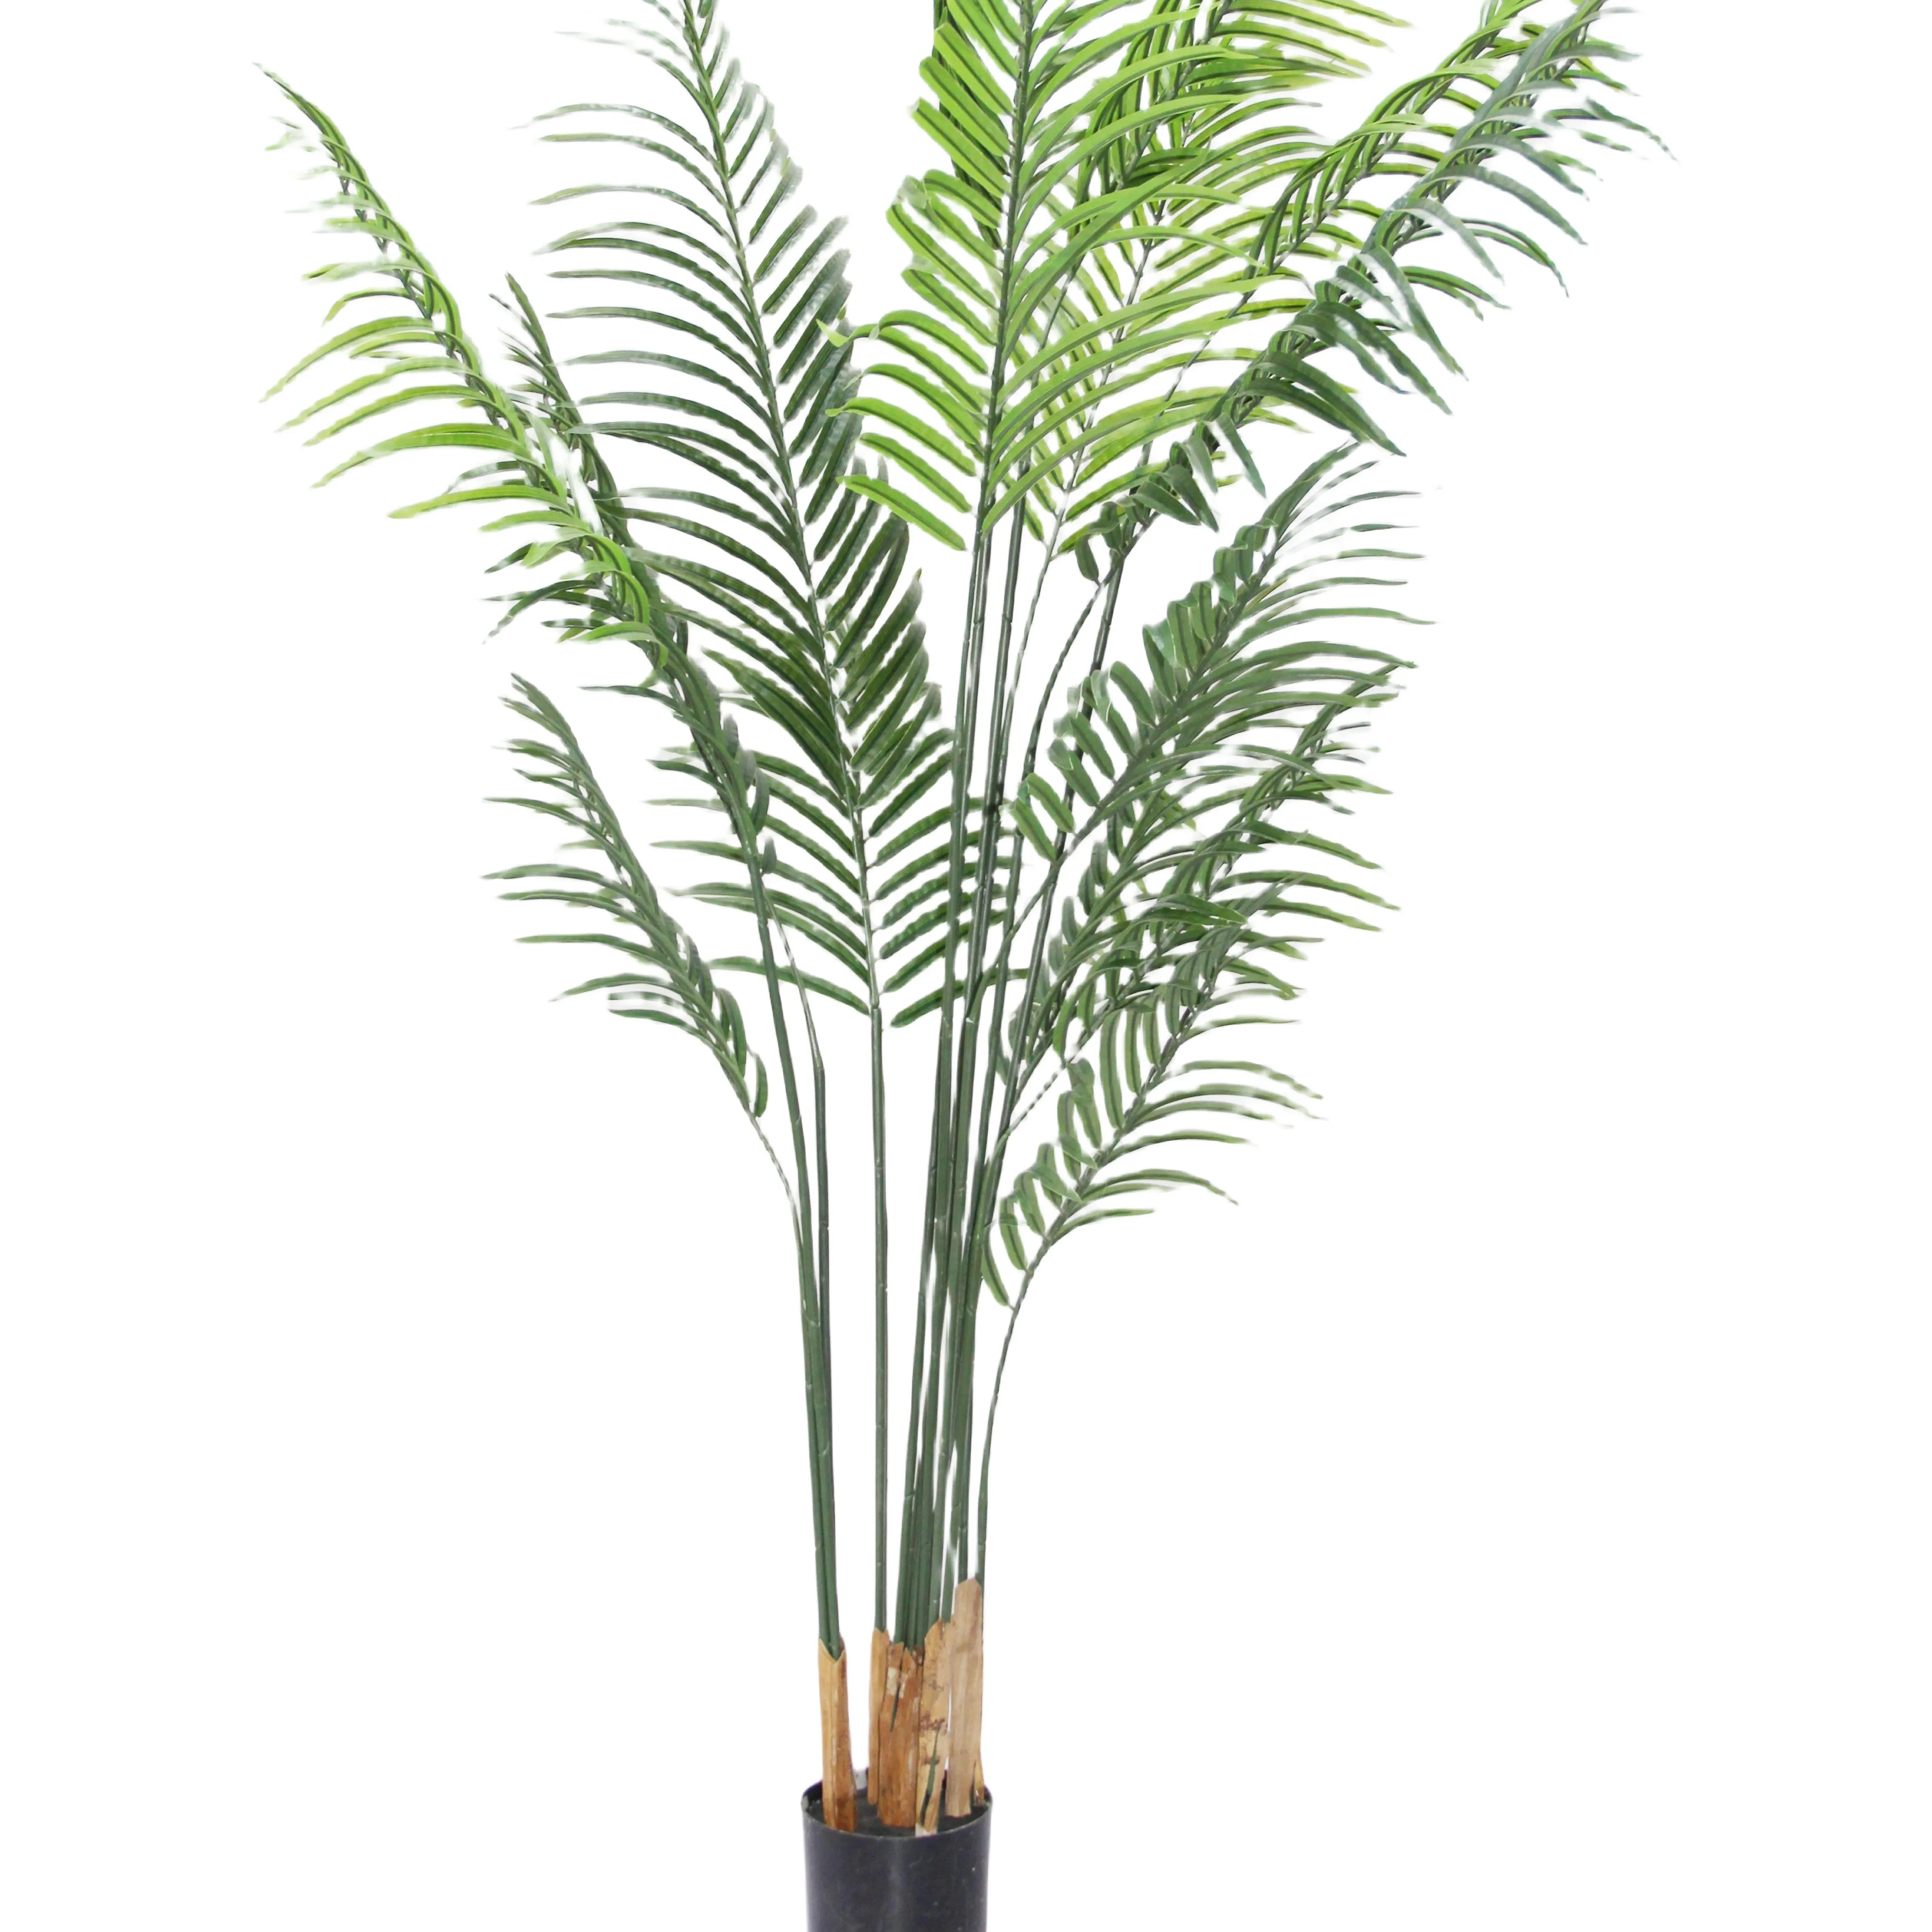 Sampel tanaman plastik hijau buatan untuk dekorasi rumah atau pohon palem luar ruangan terbuat dari bahan PE tahan lama